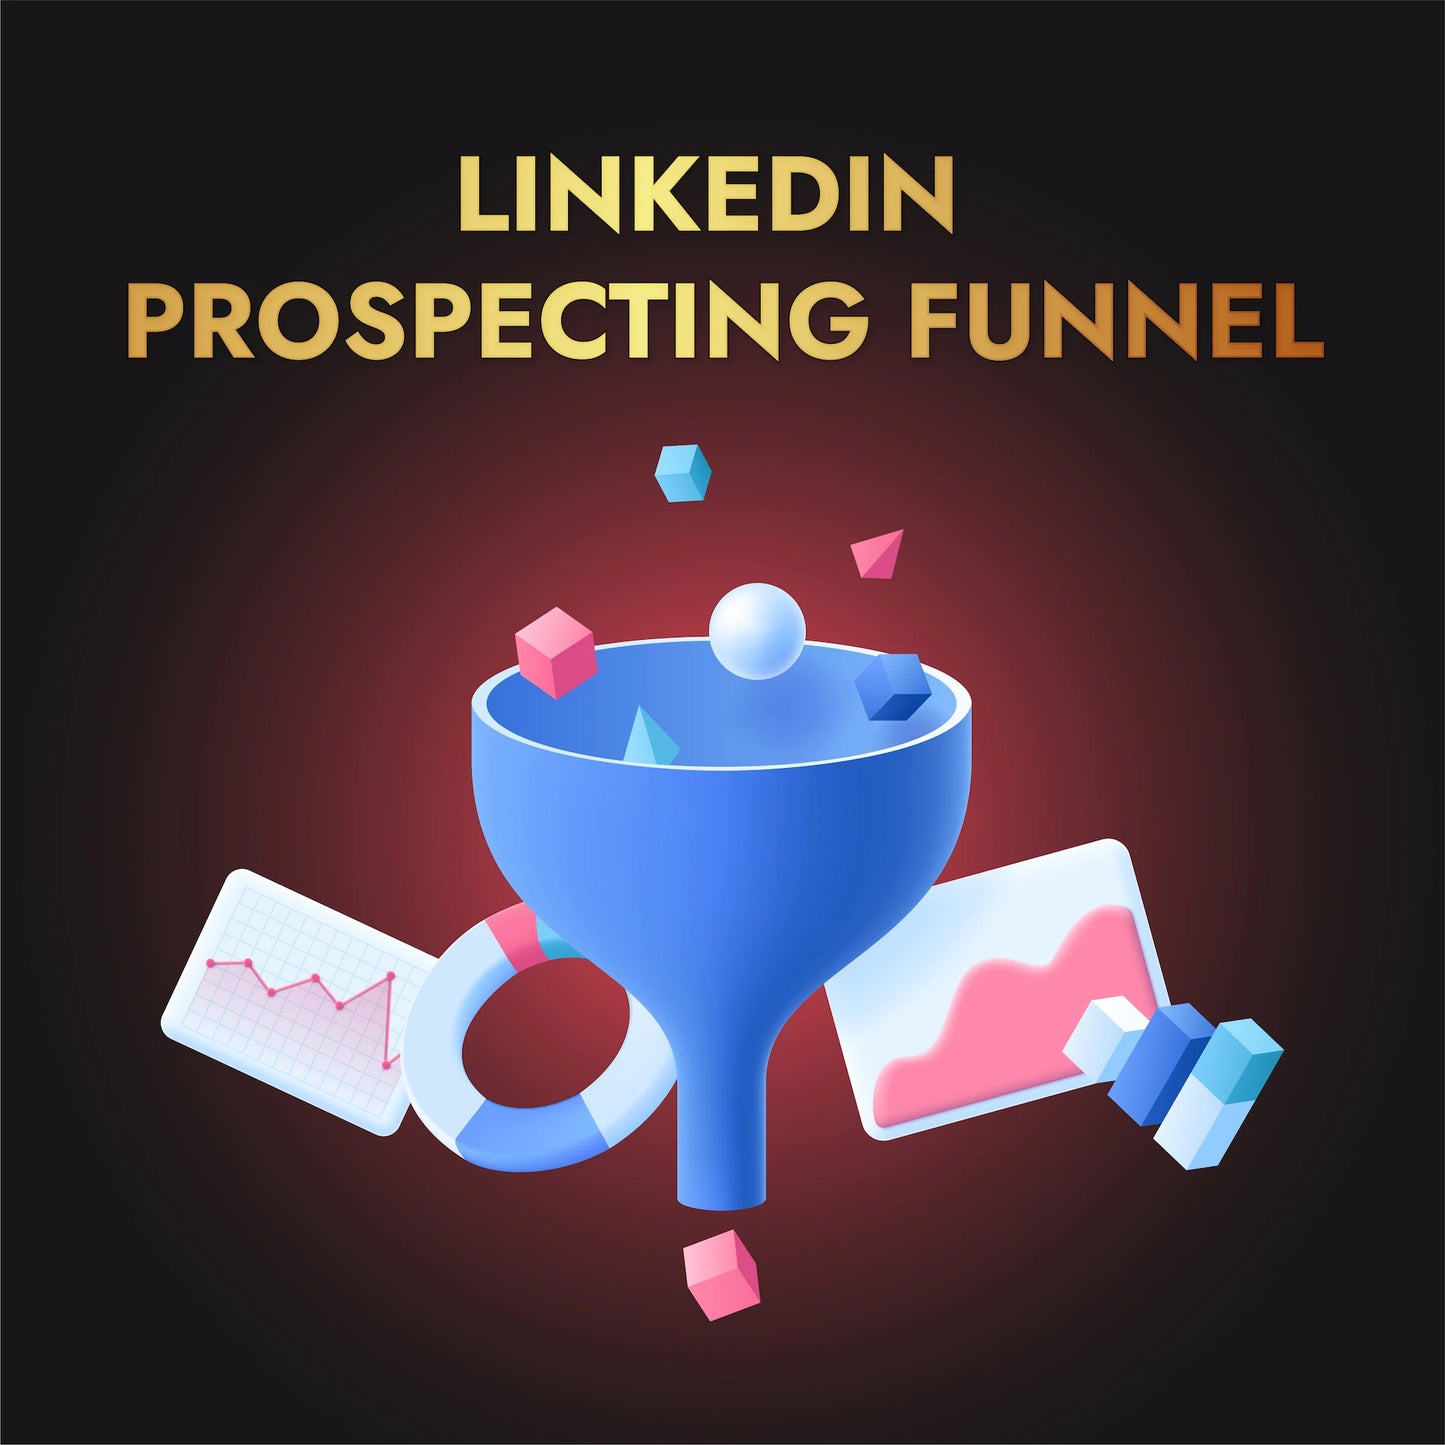 LinkedIn Prospecting Funnel